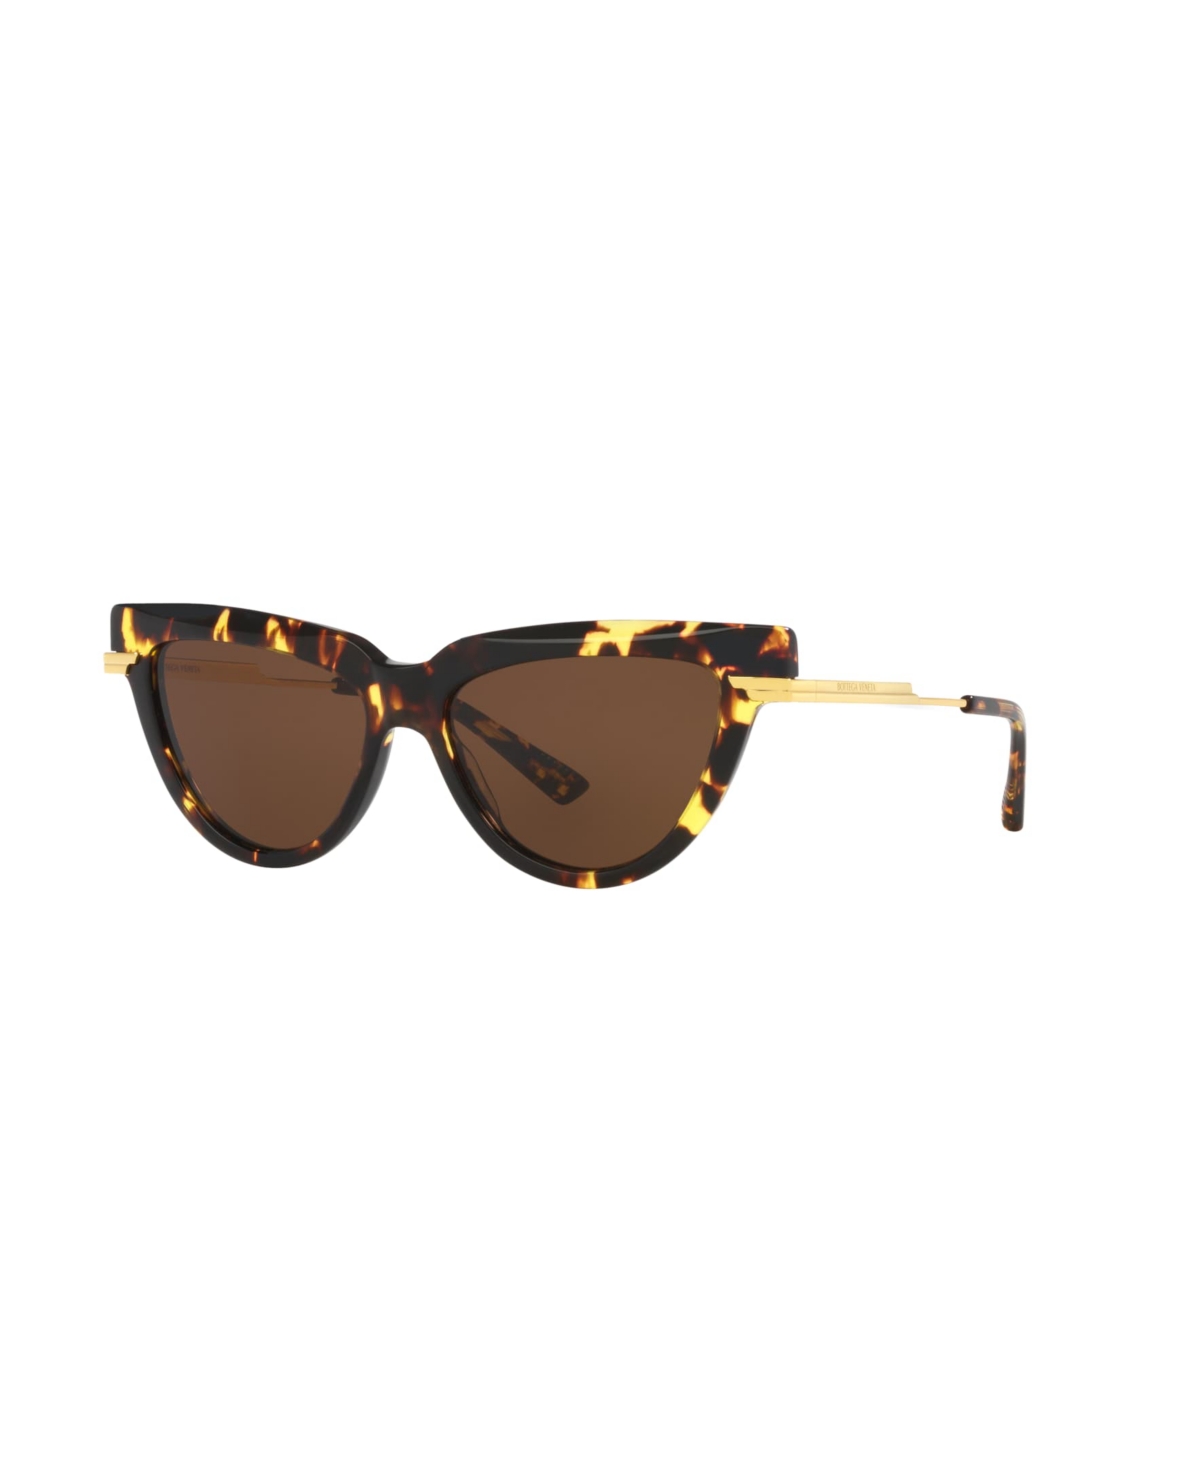 Bottega Veneta Women's Sunglasses, Bv1265s In Tortoise